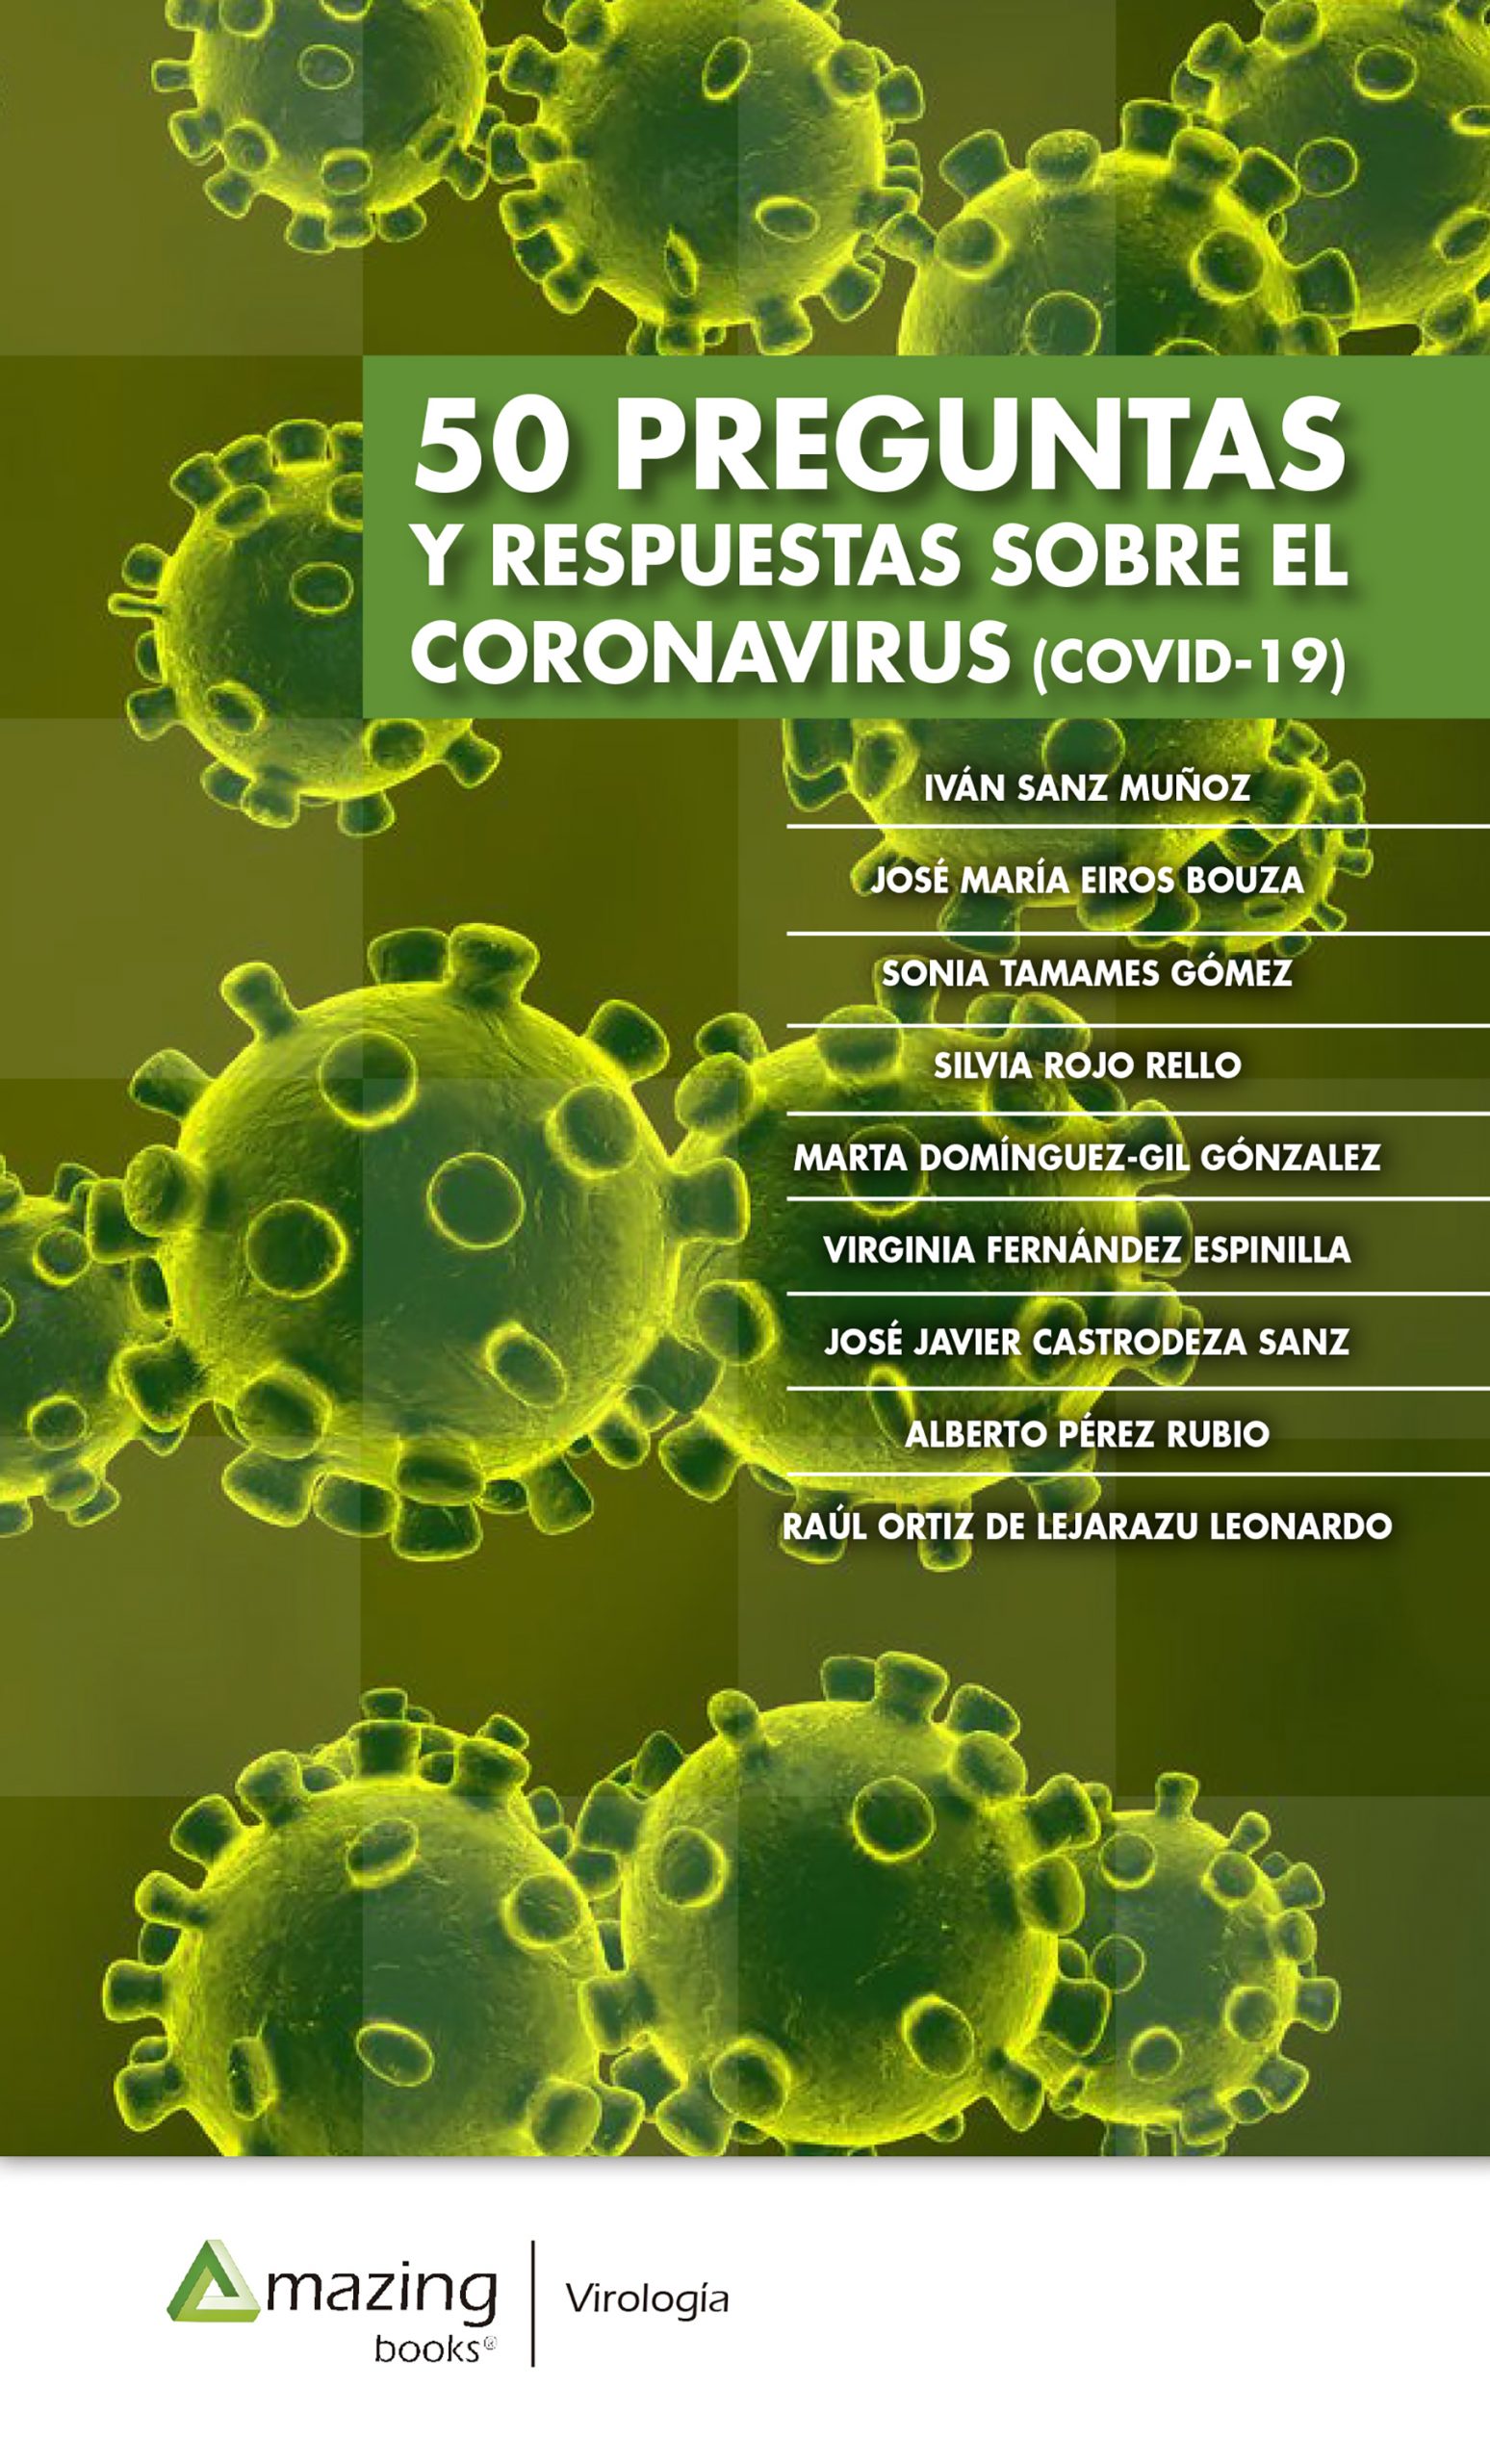 50 Preguntas Y Respuestas Sobre El Coronavirus Covid 2019 Un E Book